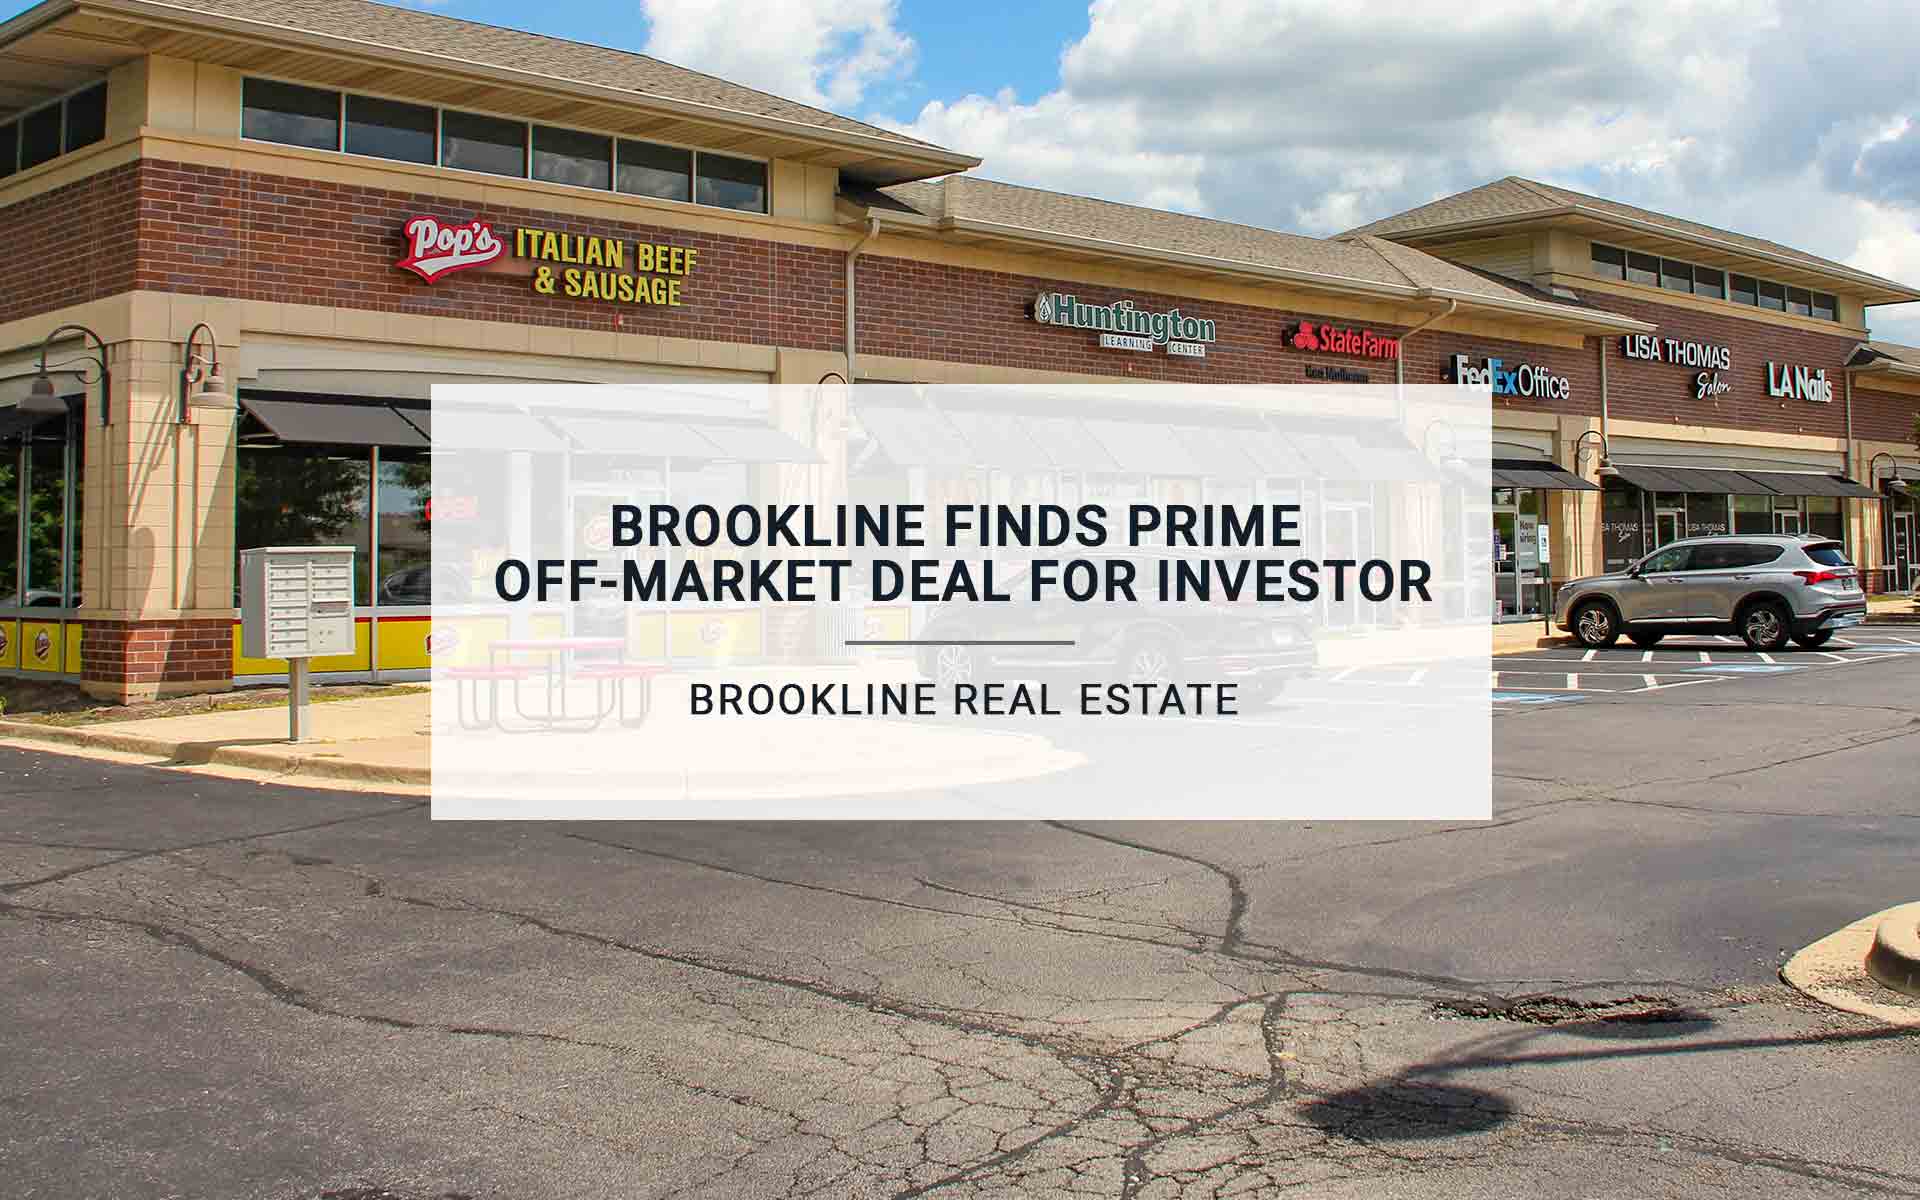 Brookline Finds Prime Off-Market Deal for Investor